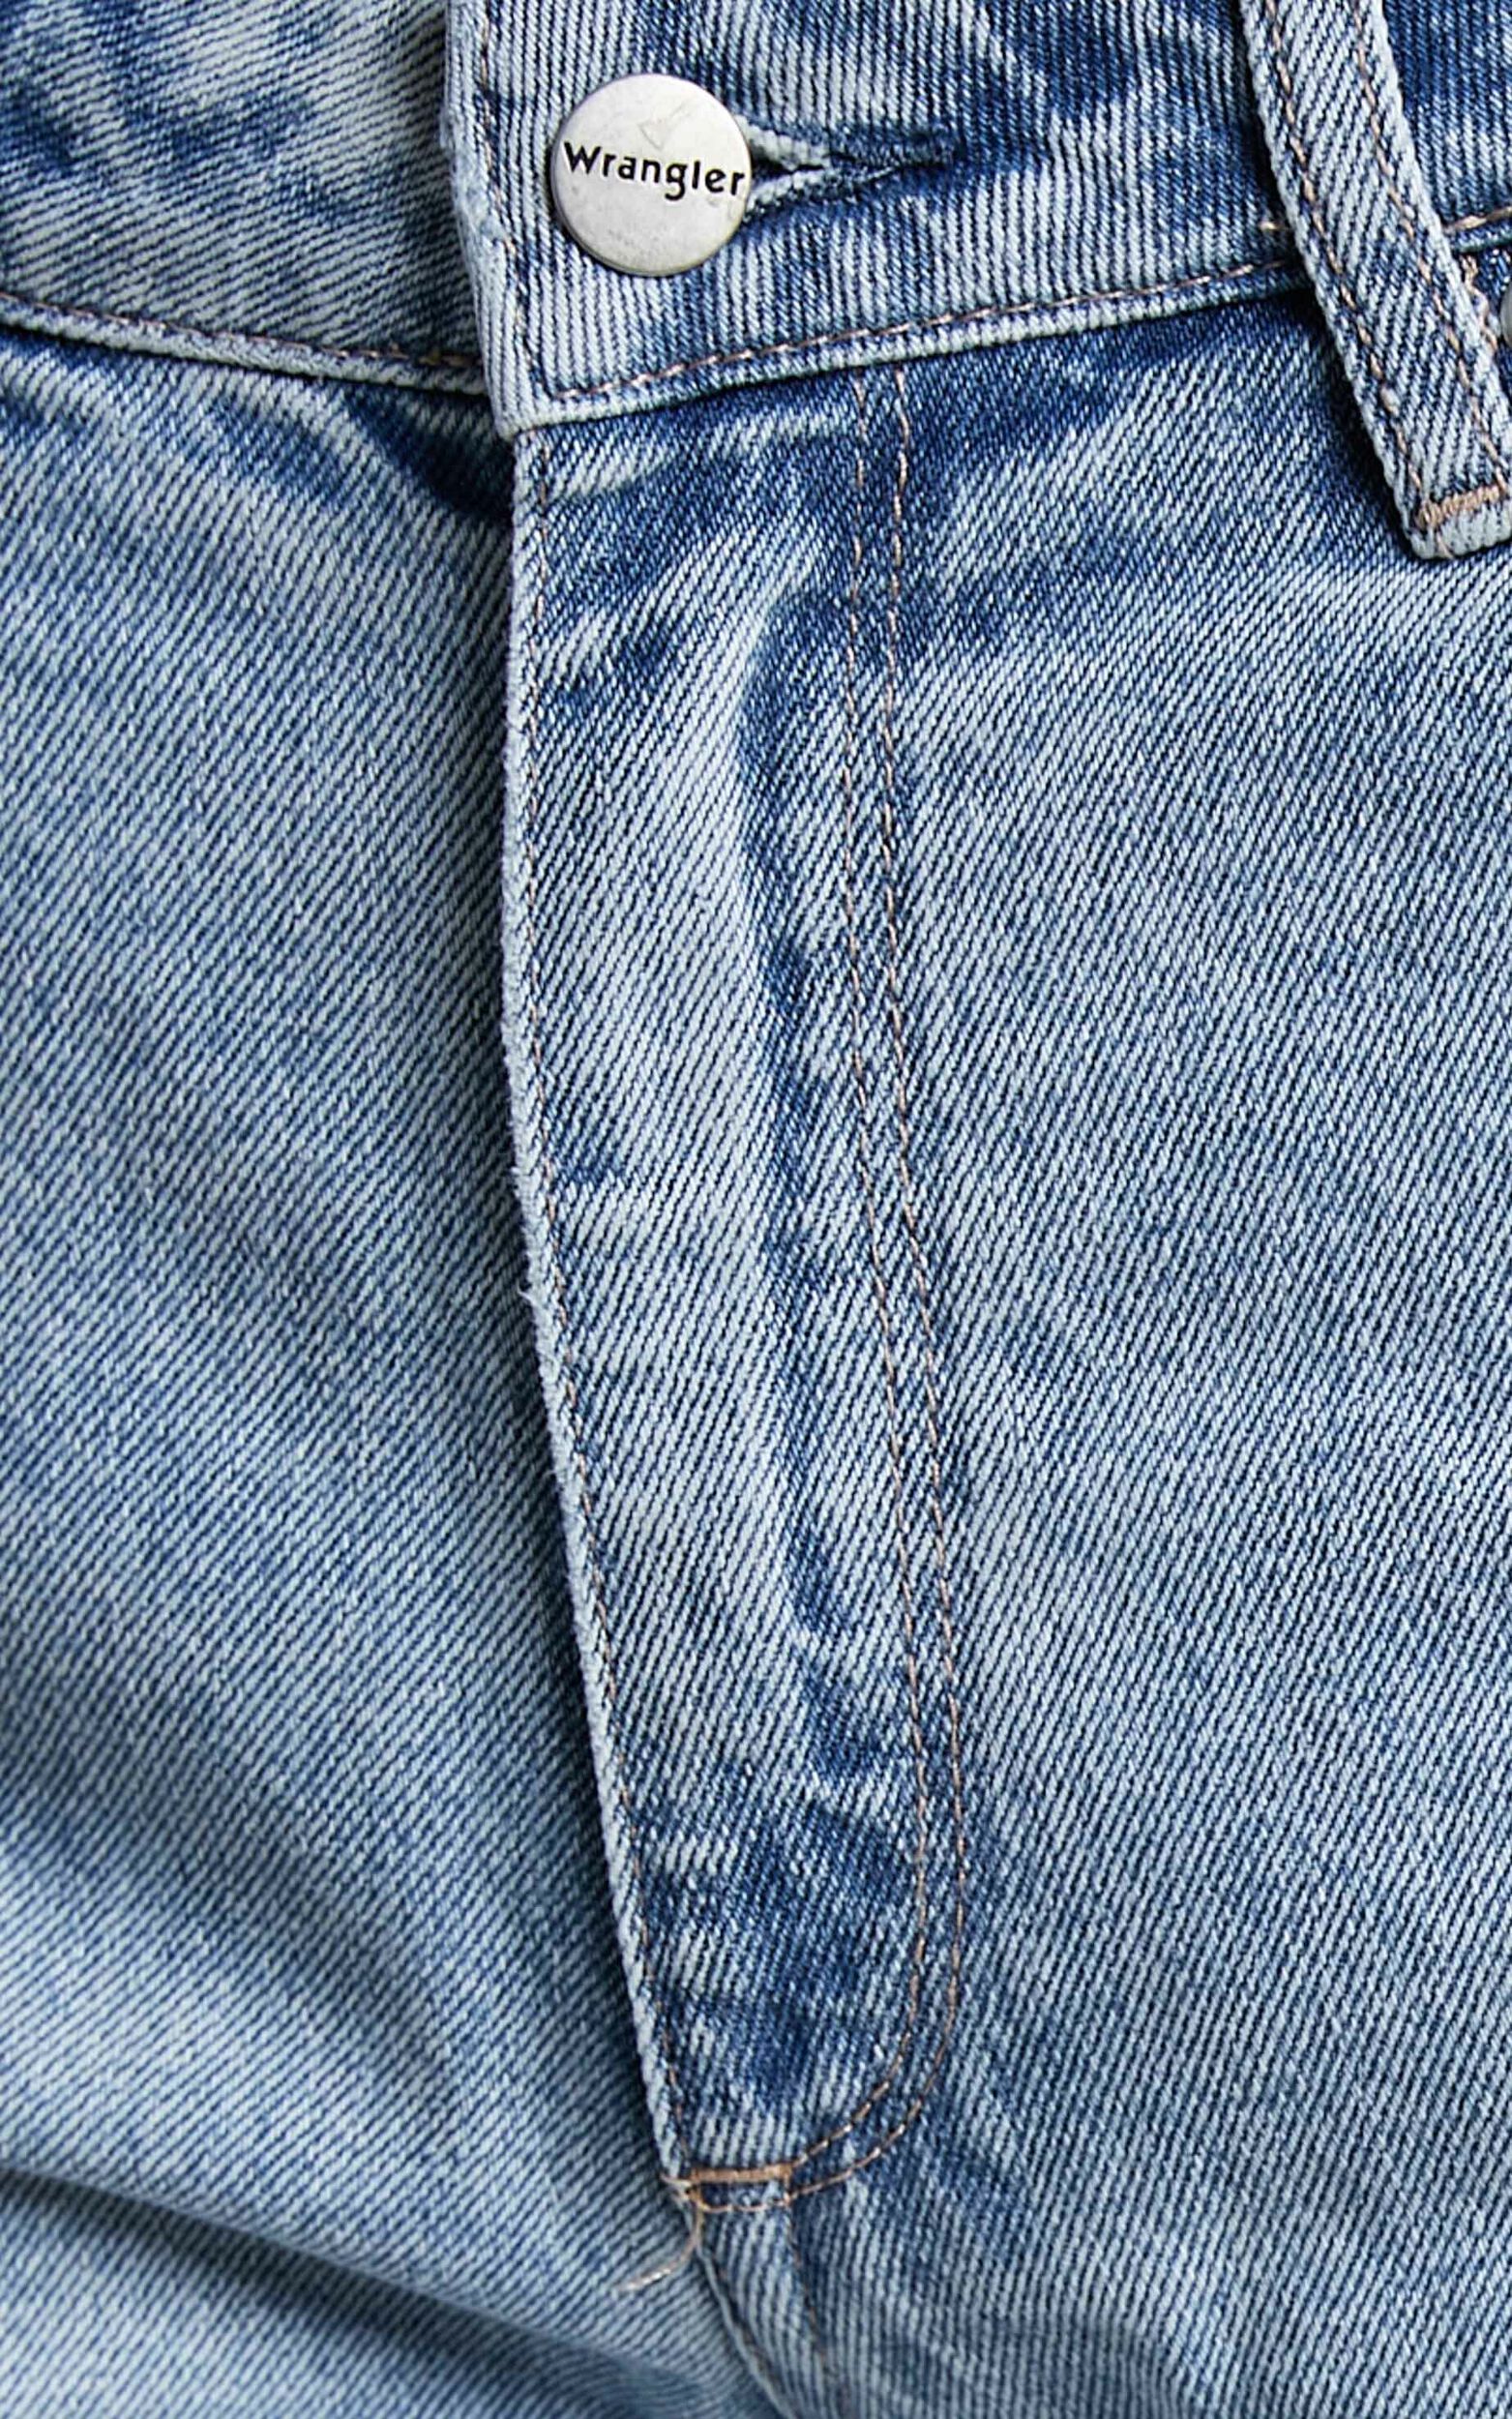 Wrangler - Drew Jeans in Lucille Blue | Showpo USA